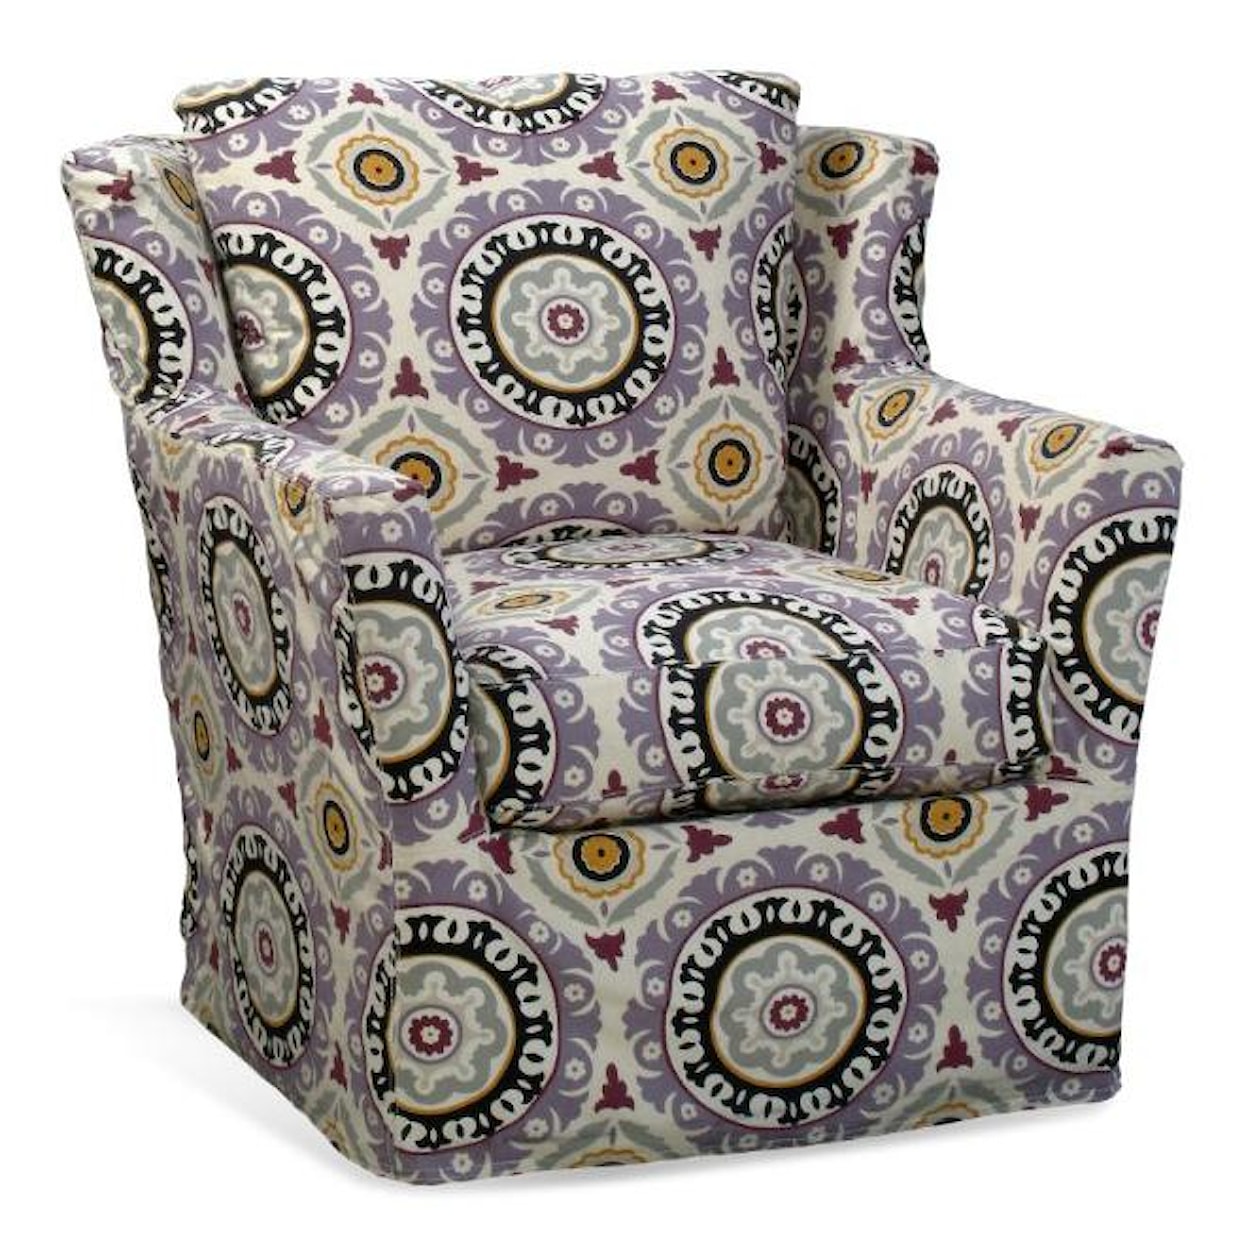 Four Seasons Furniture Porter F Upholstered Swivel Glider Chair